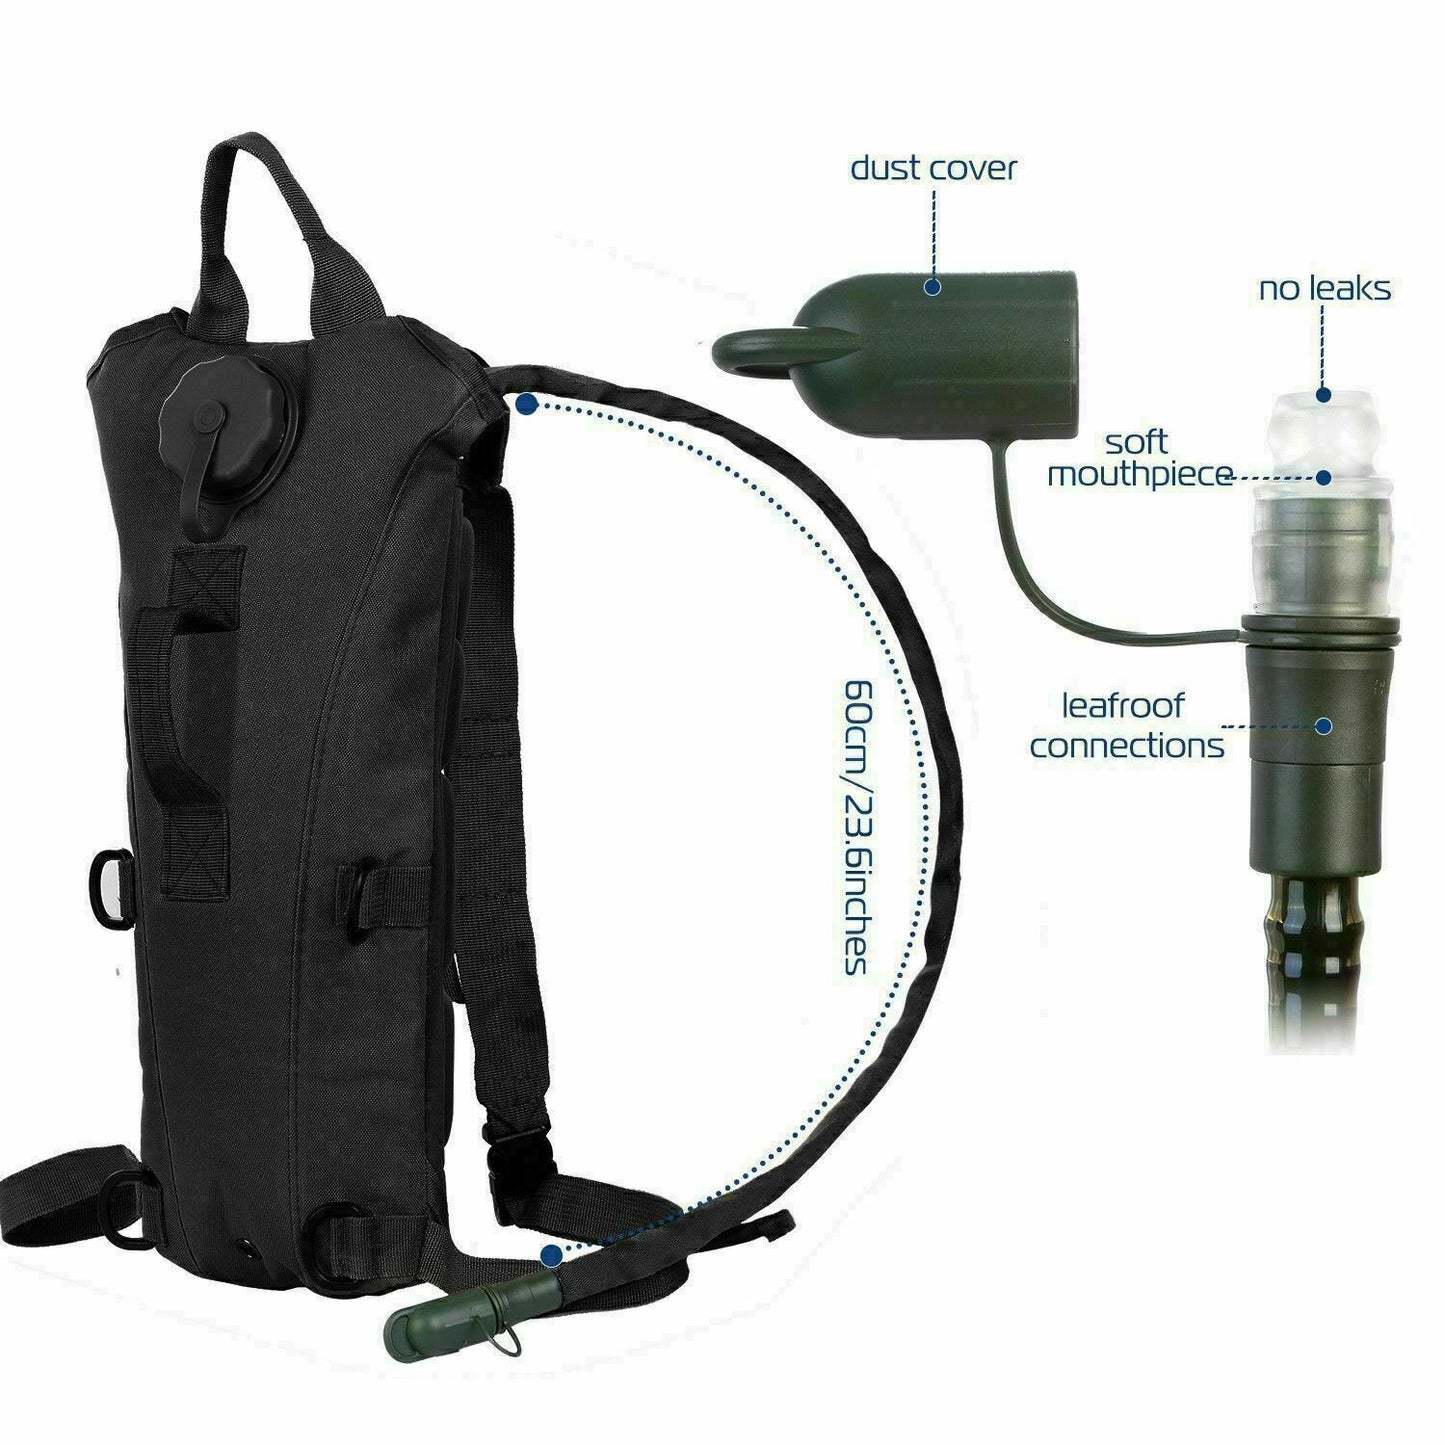 Bolsa de vejiga de agua de 3L, mochila táctica militar para senderismo, Camping, hidratación, al aire libre